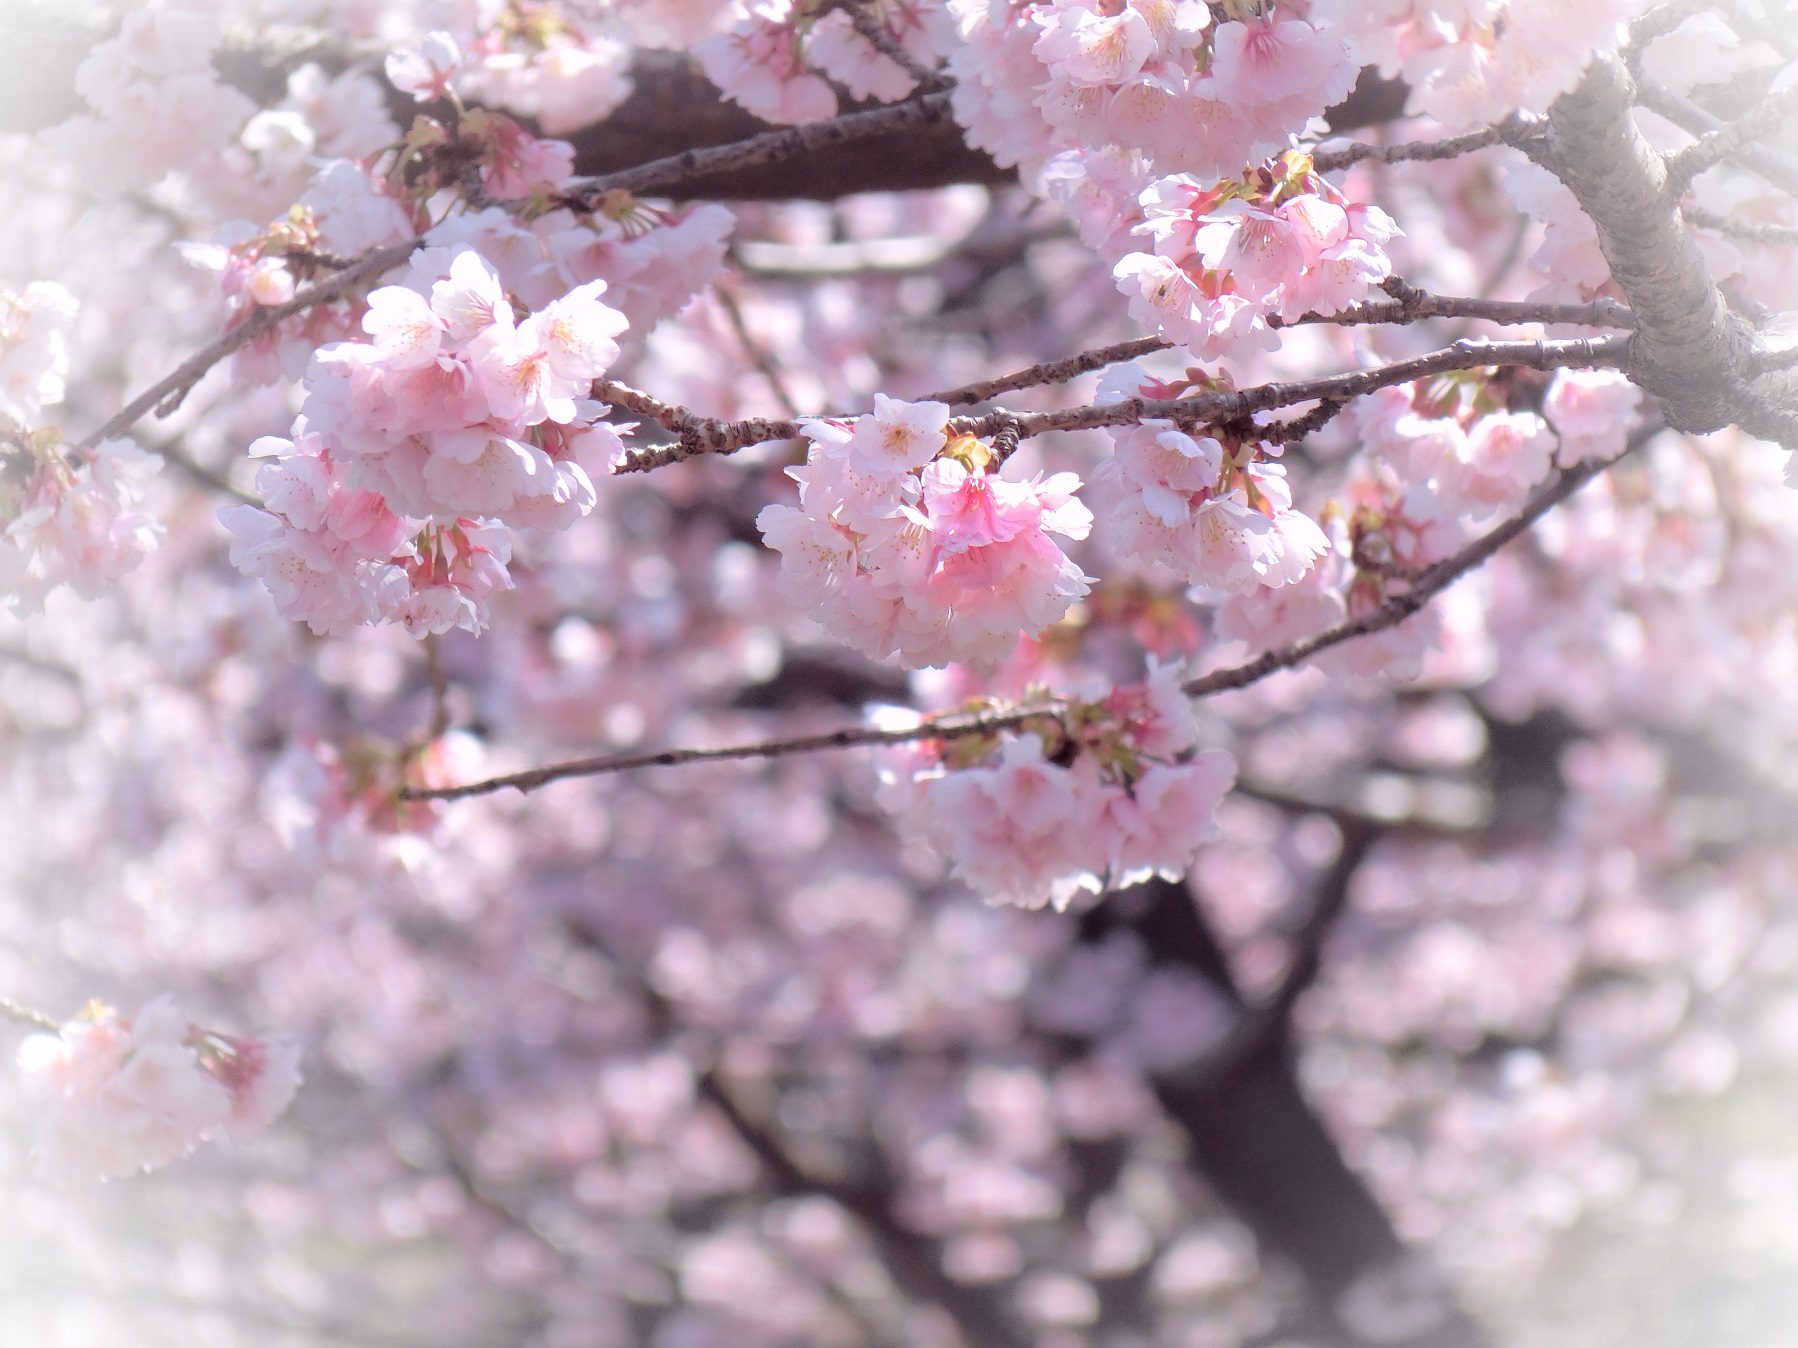 伊豆高原駅前のおおかん桜が美しい お花の開花状況16 03 06 伊豆 伊東温泉 青山やまと